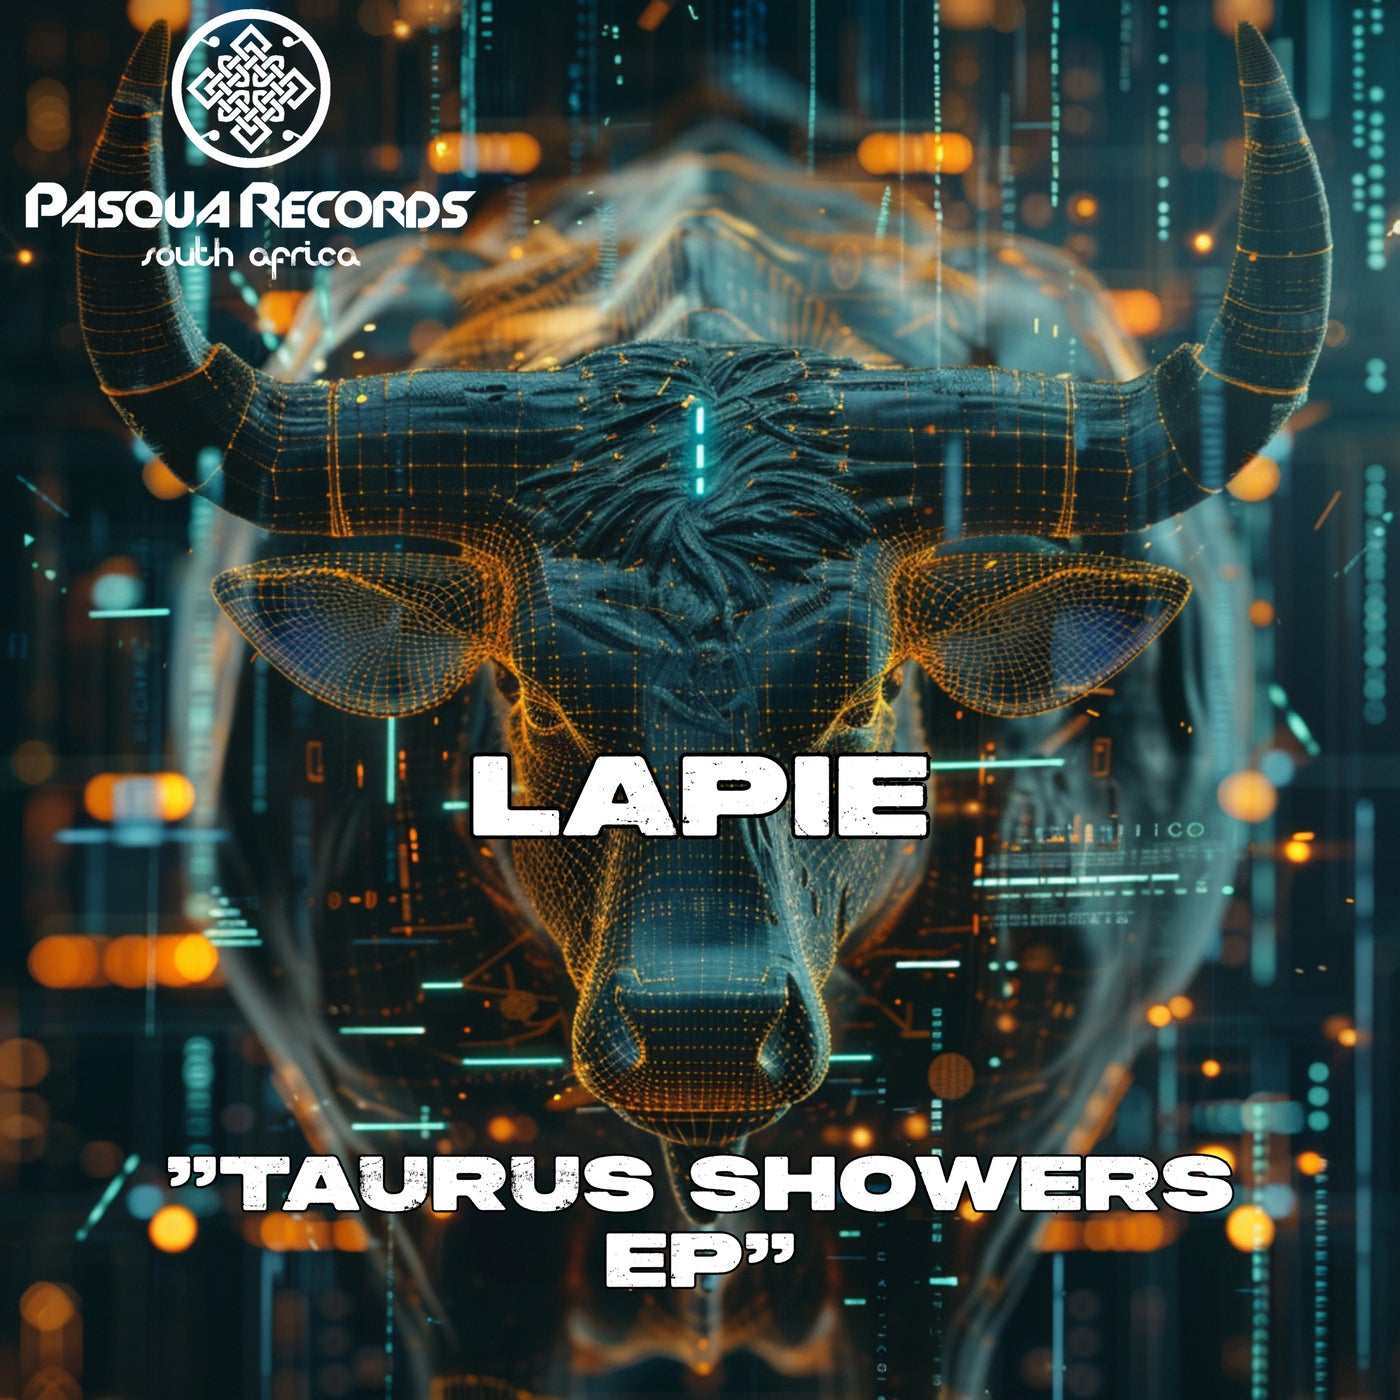 Taurus Showers EP